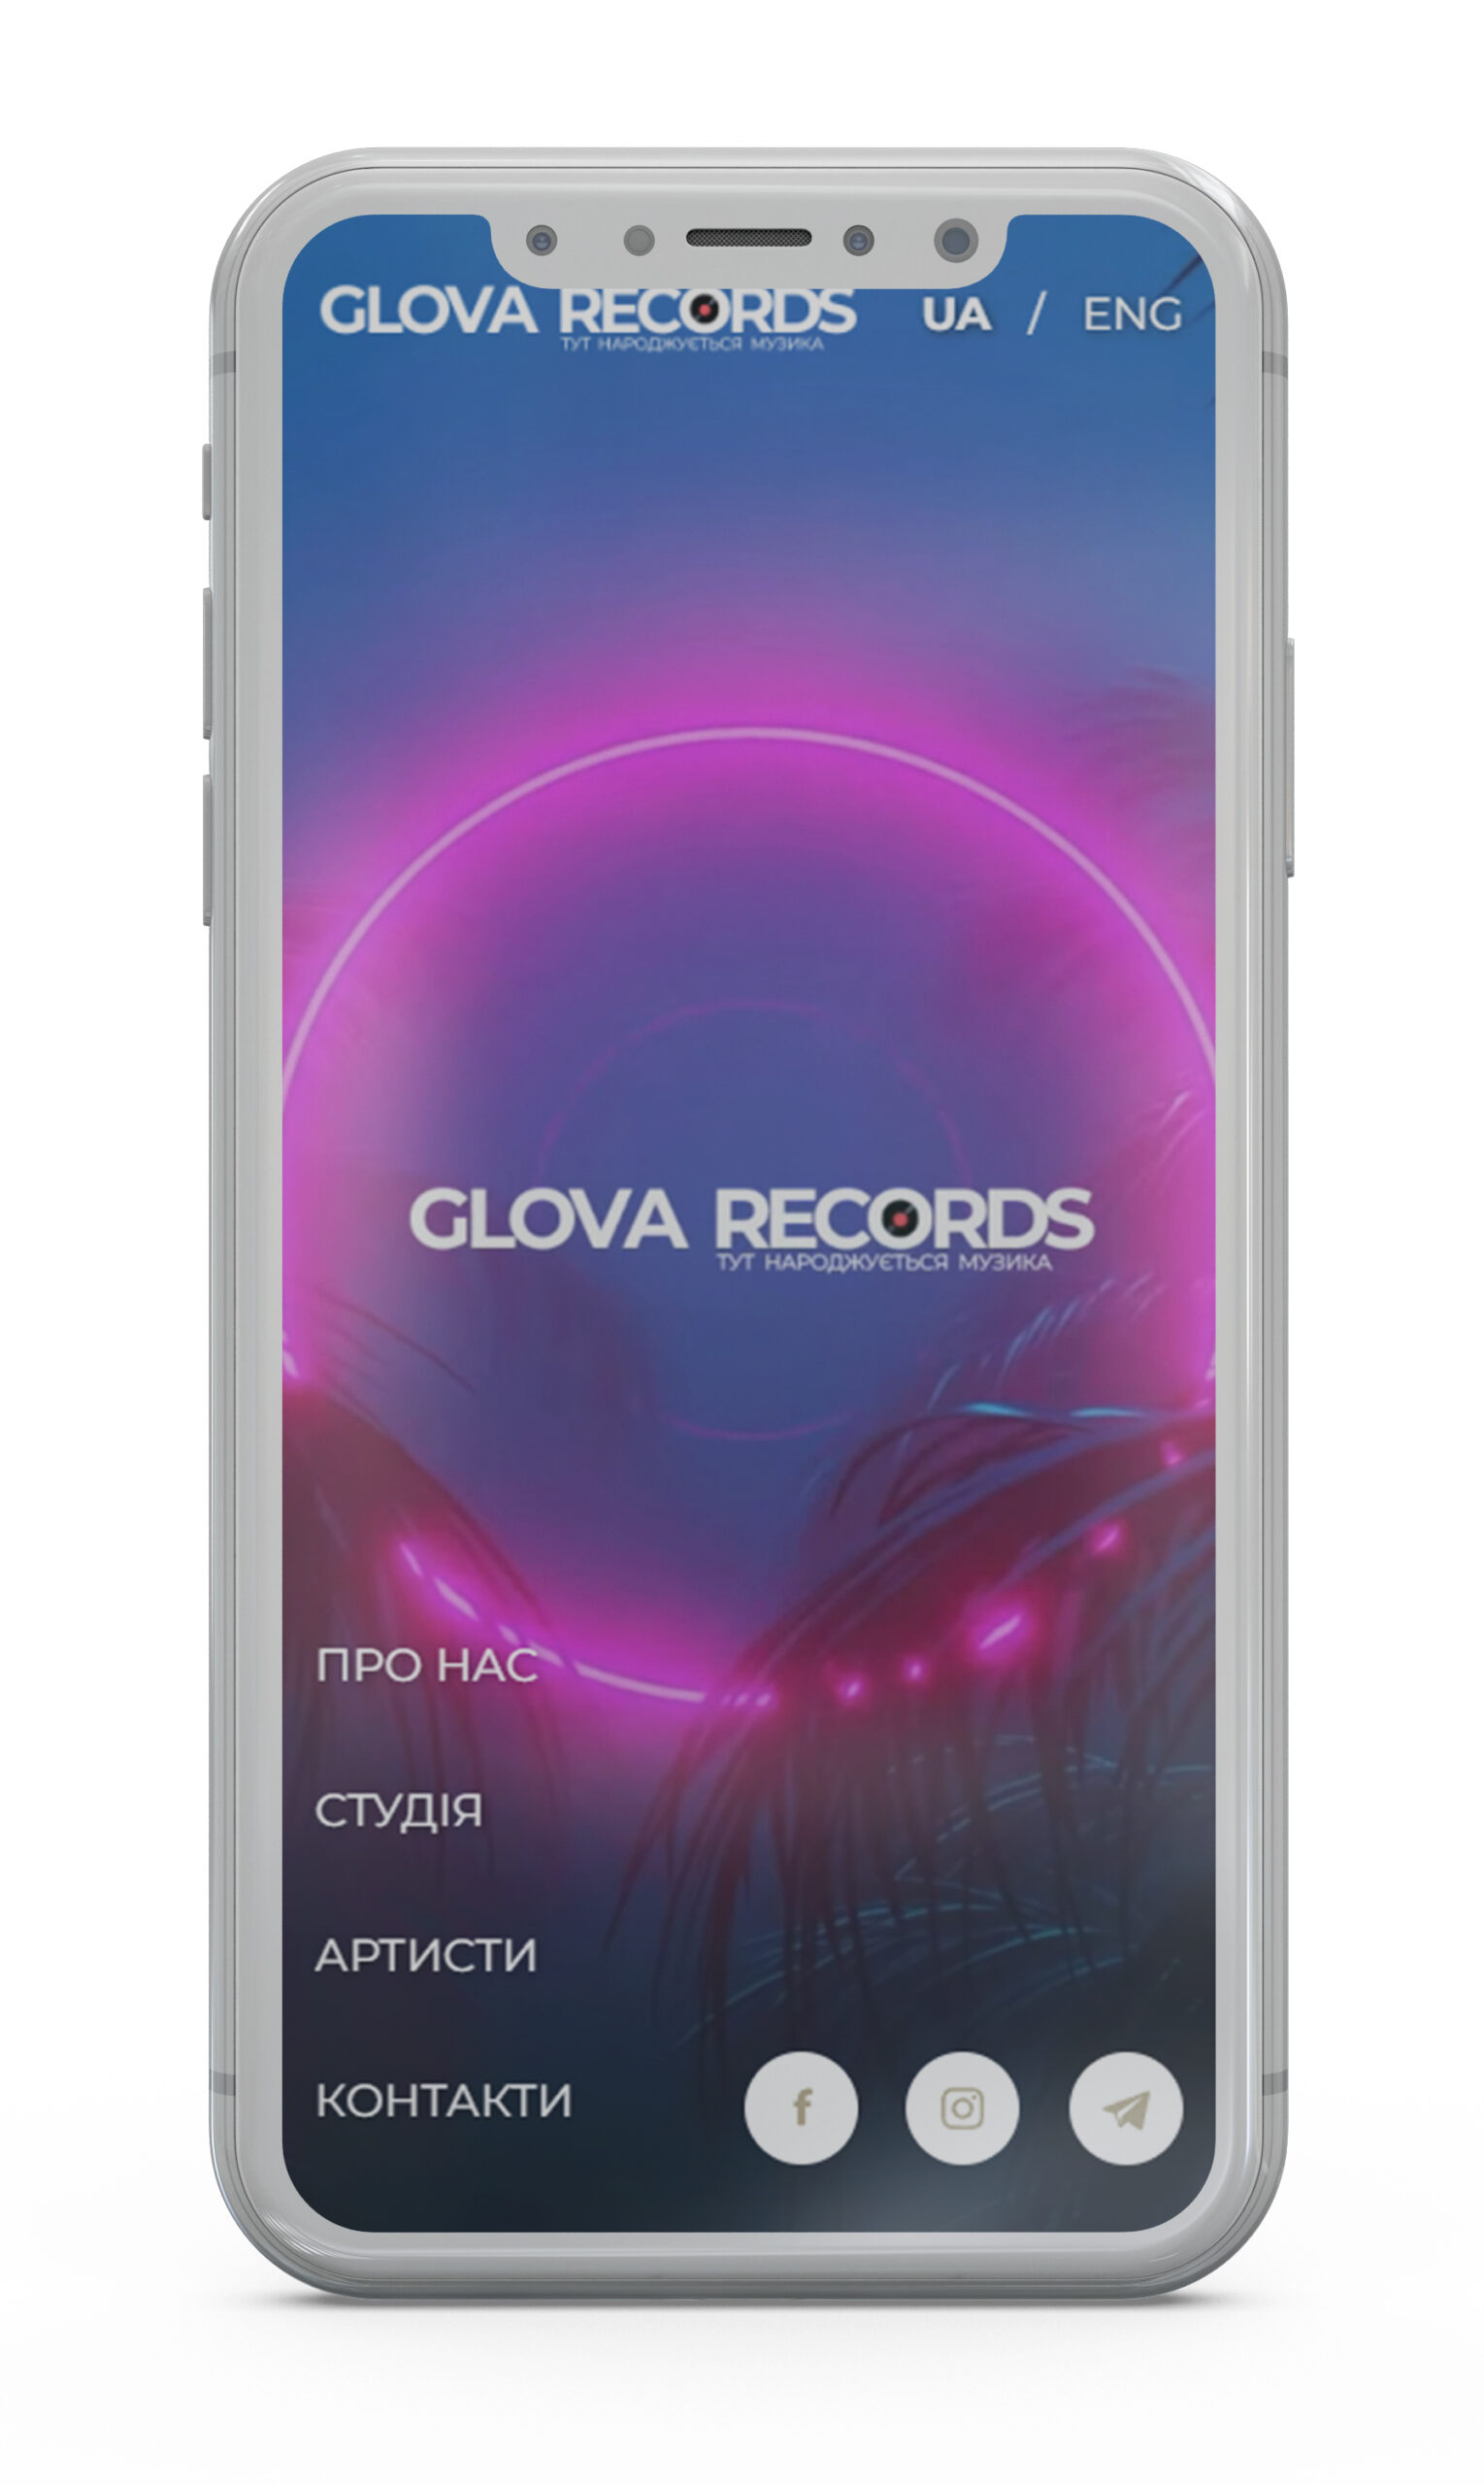 Glova records